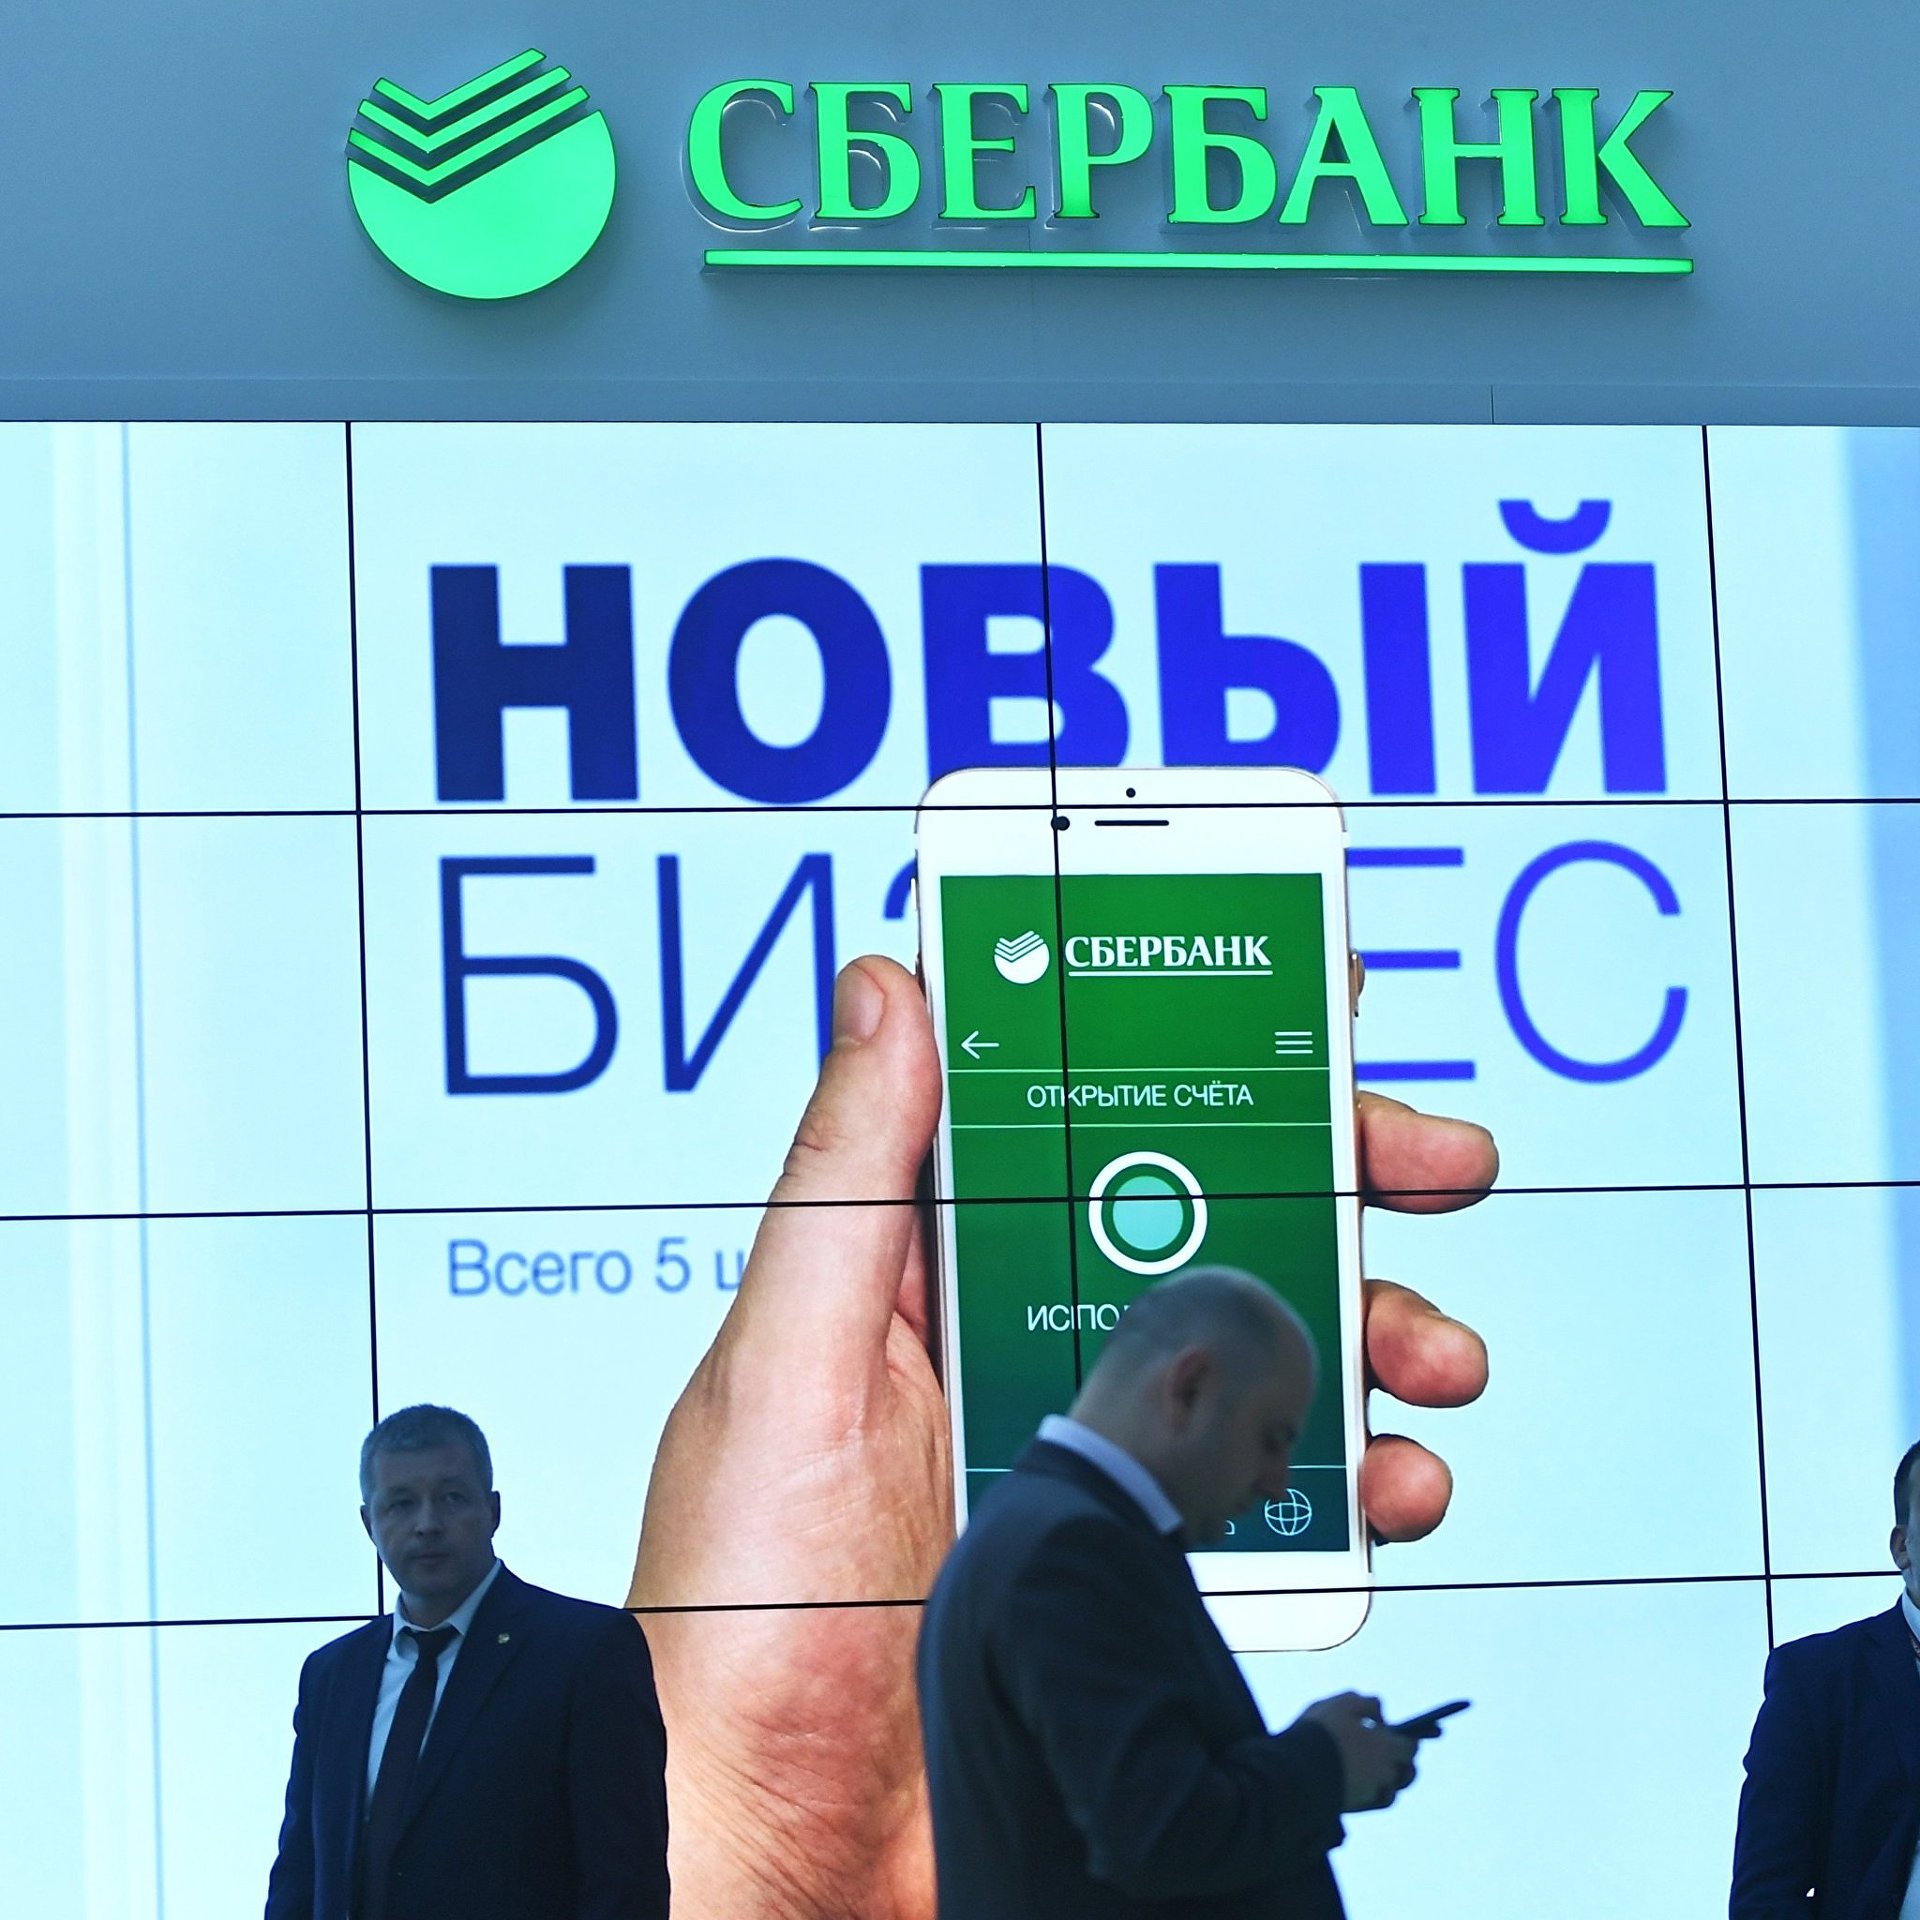 Кредит до зарплаты сбербанк как взять кредит на авто в беларуси отзывы